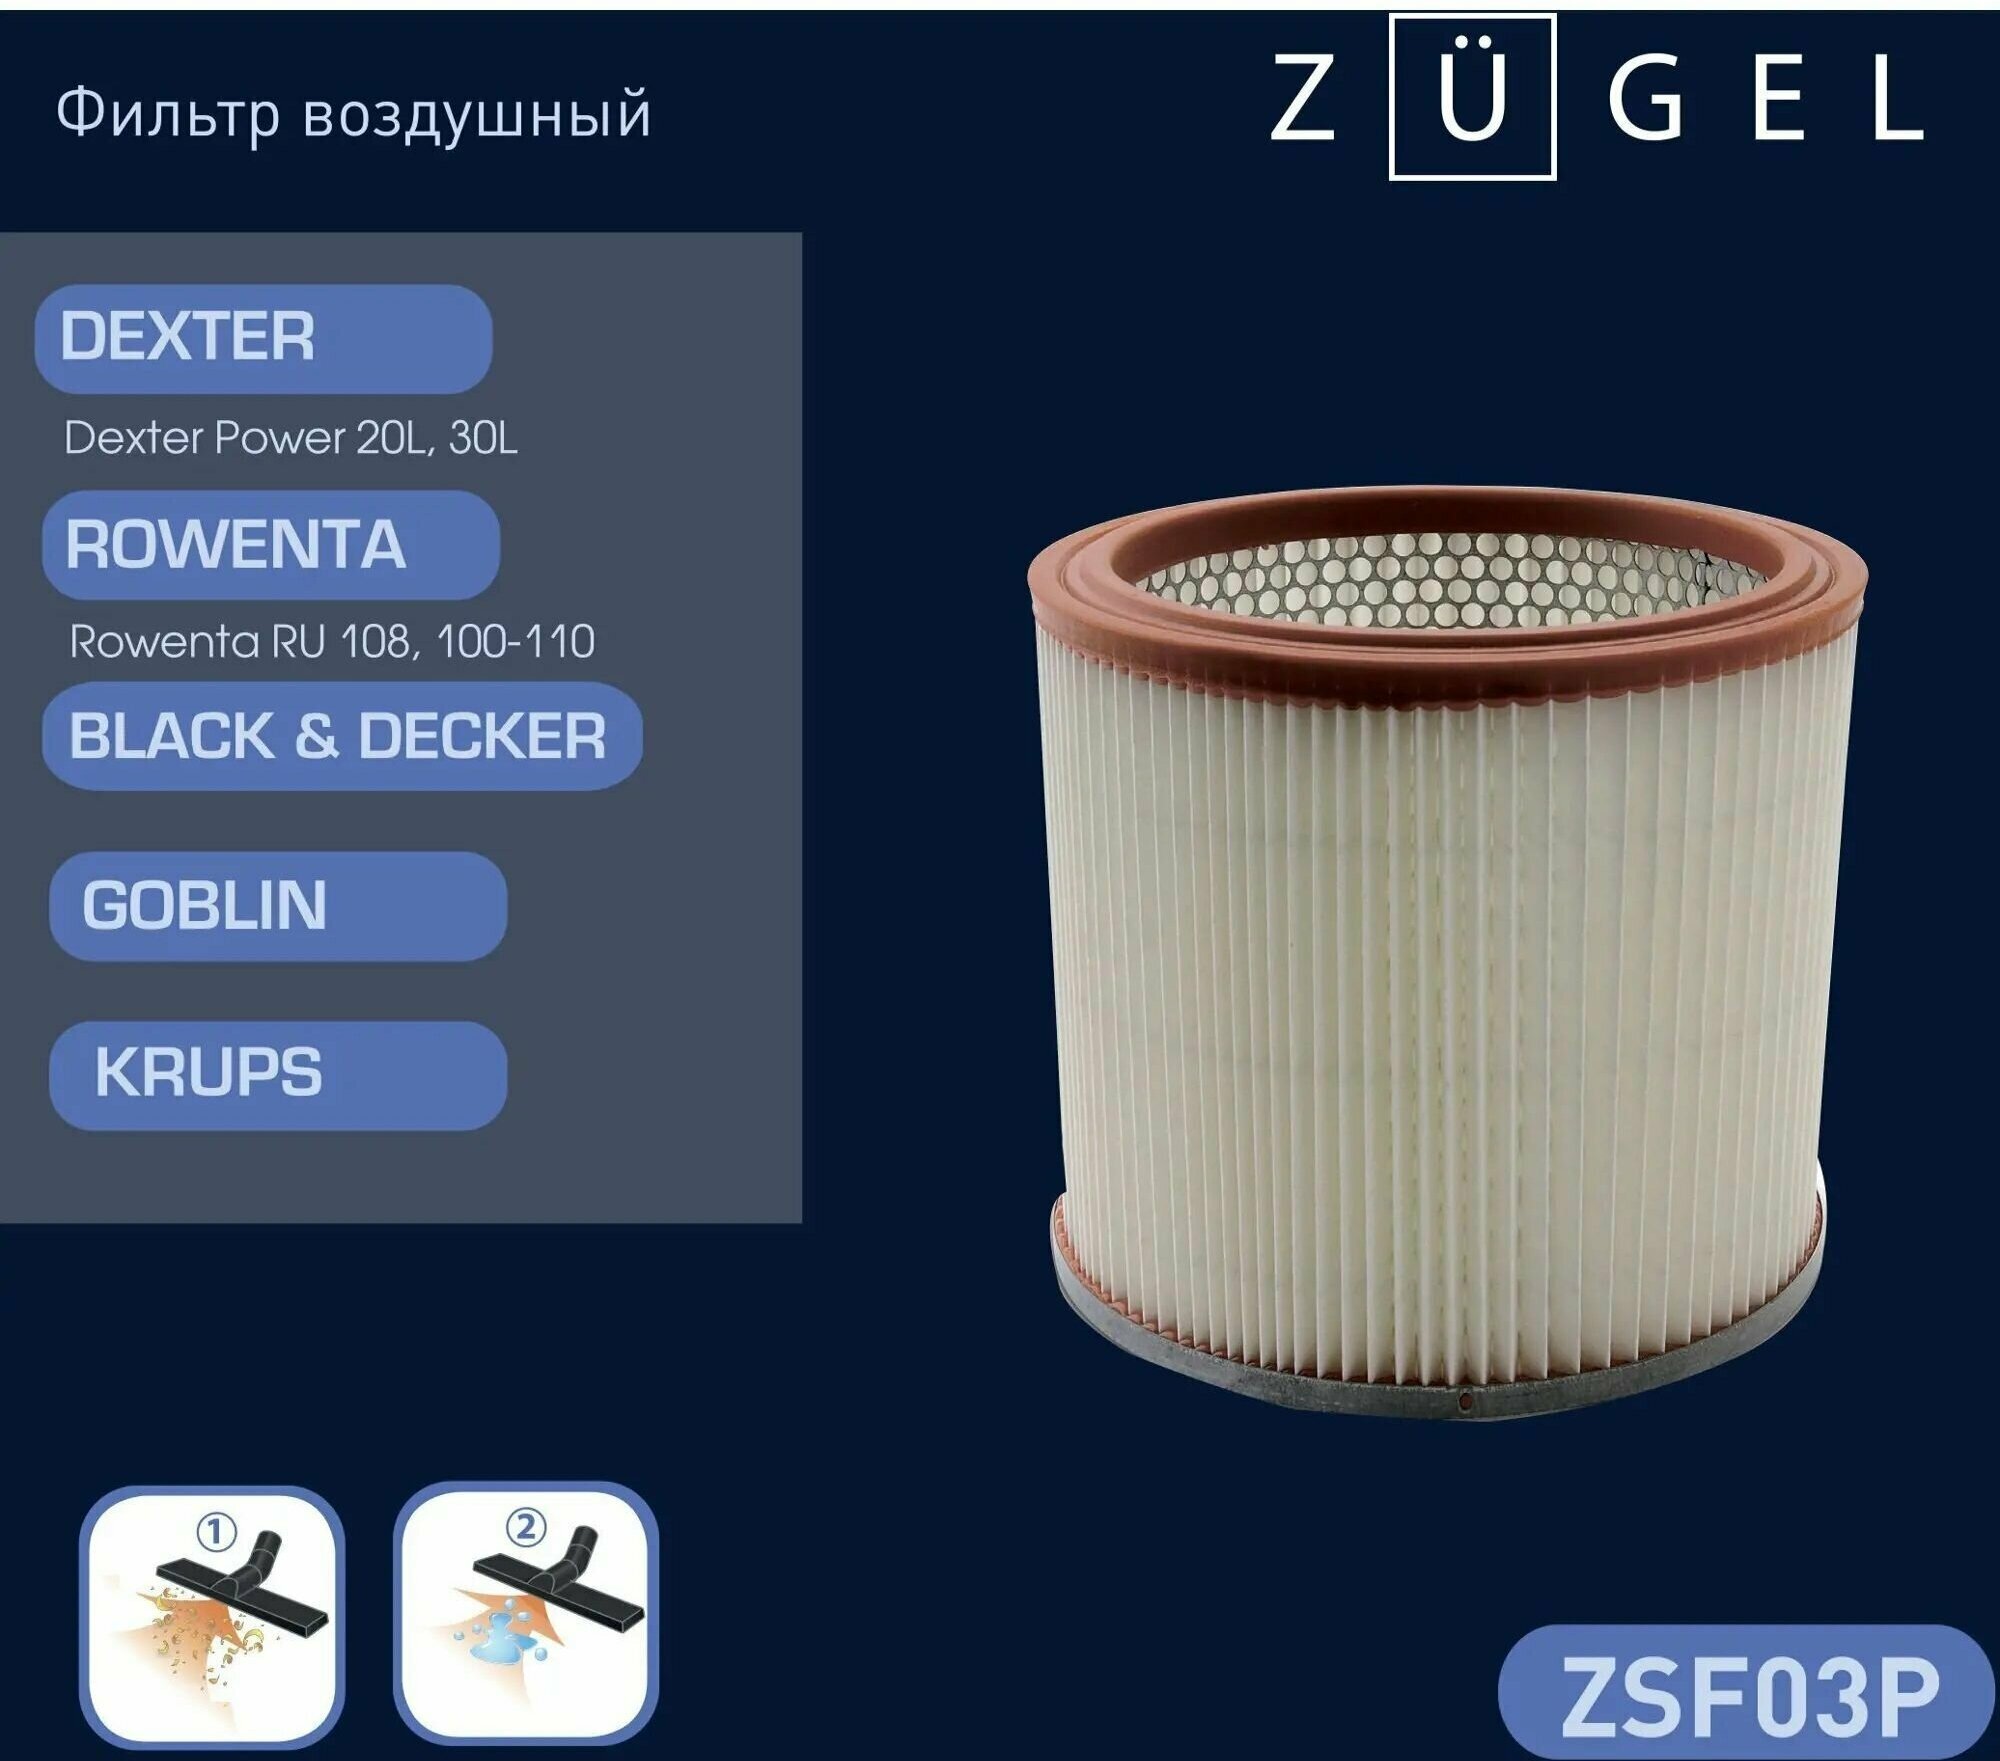 Фильтр воздушный Zugel ZSF03P, для пылесосов Dexter / Rowenta / Black&Decker - фотография № 2